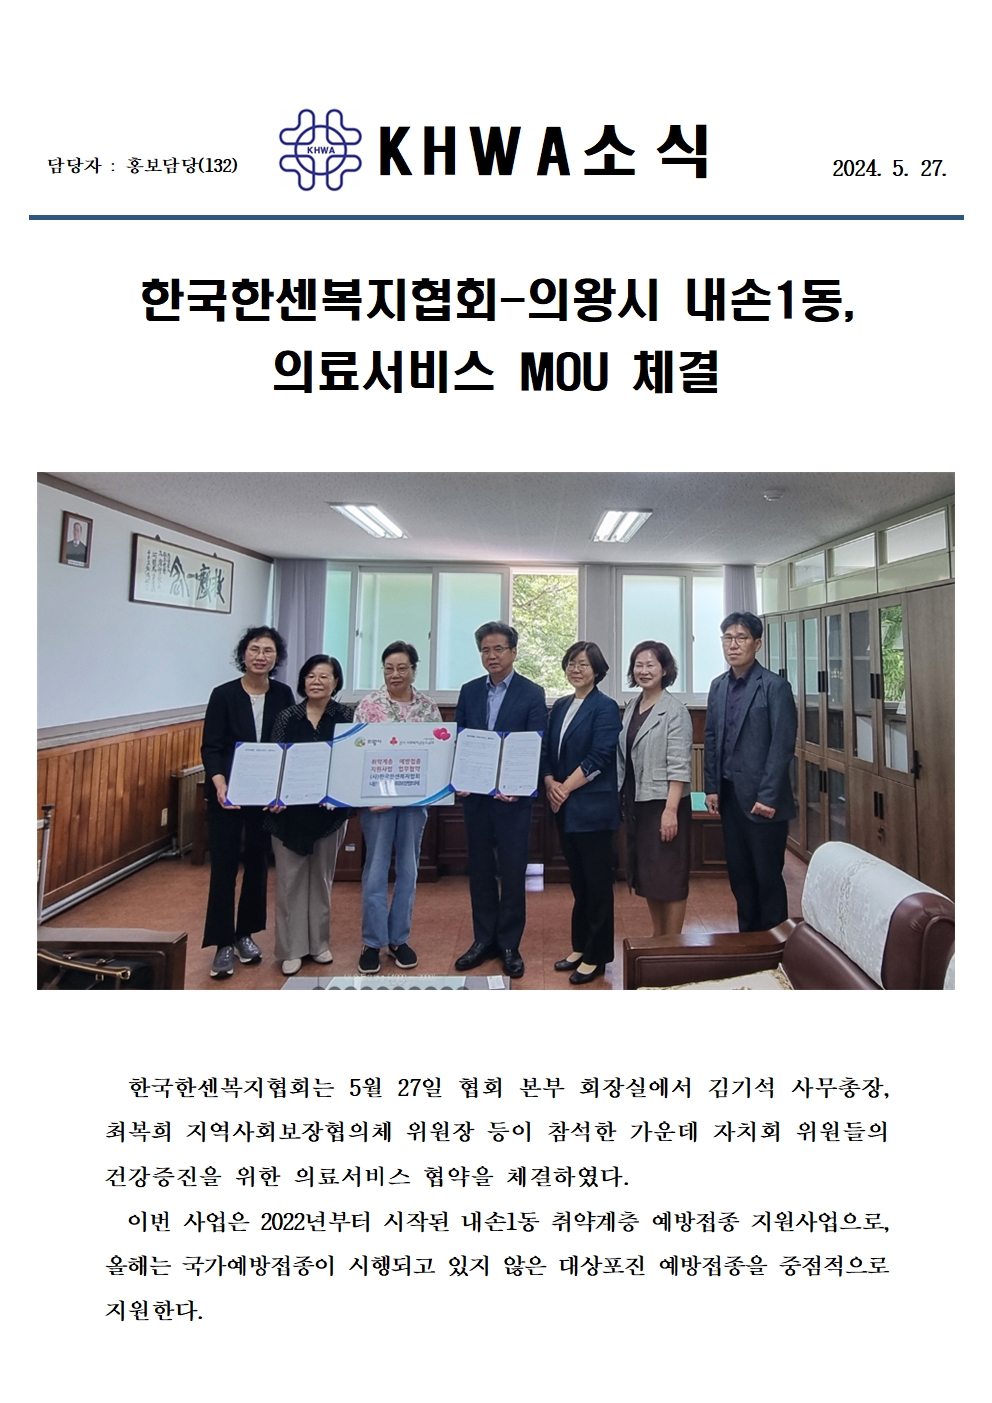 한국한센복지협회-의왕시 내손1동, 의료서비스 MOU 체결